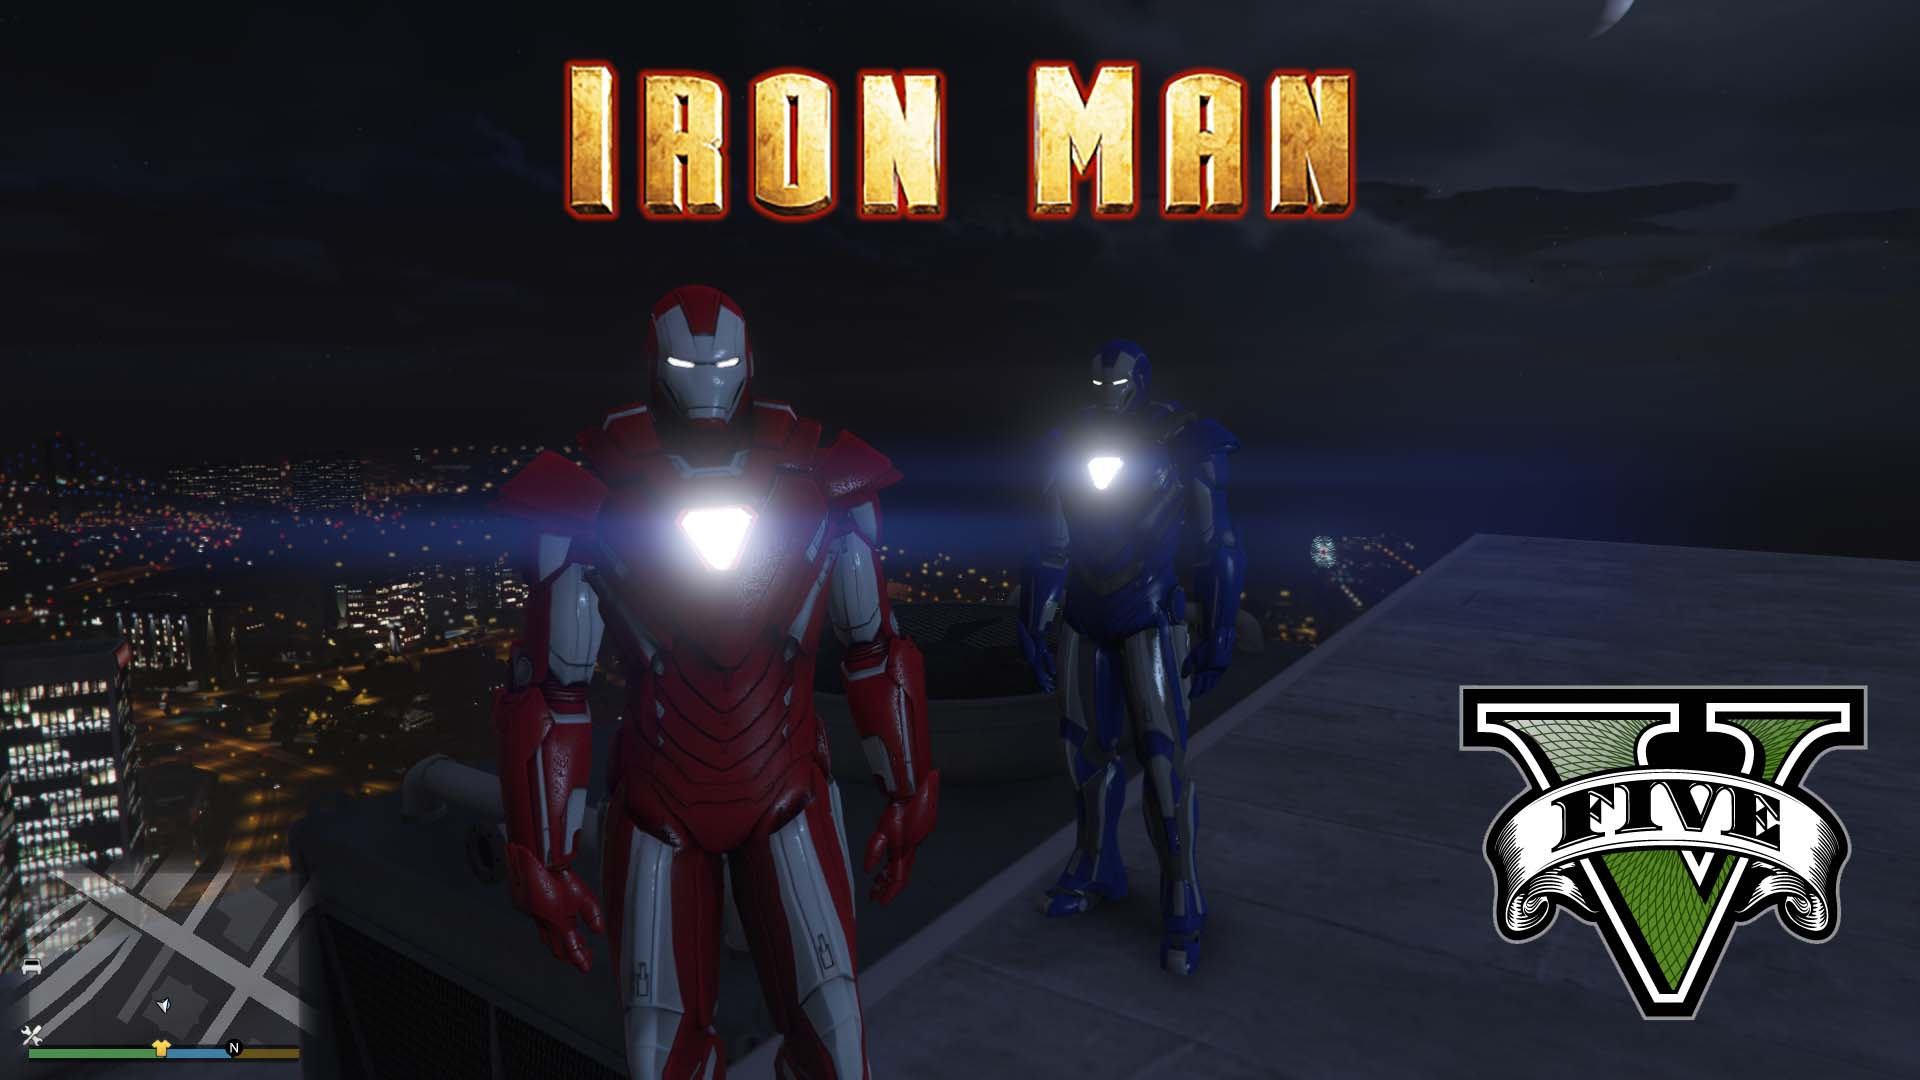 Iron man mark v gta 5 фото 97